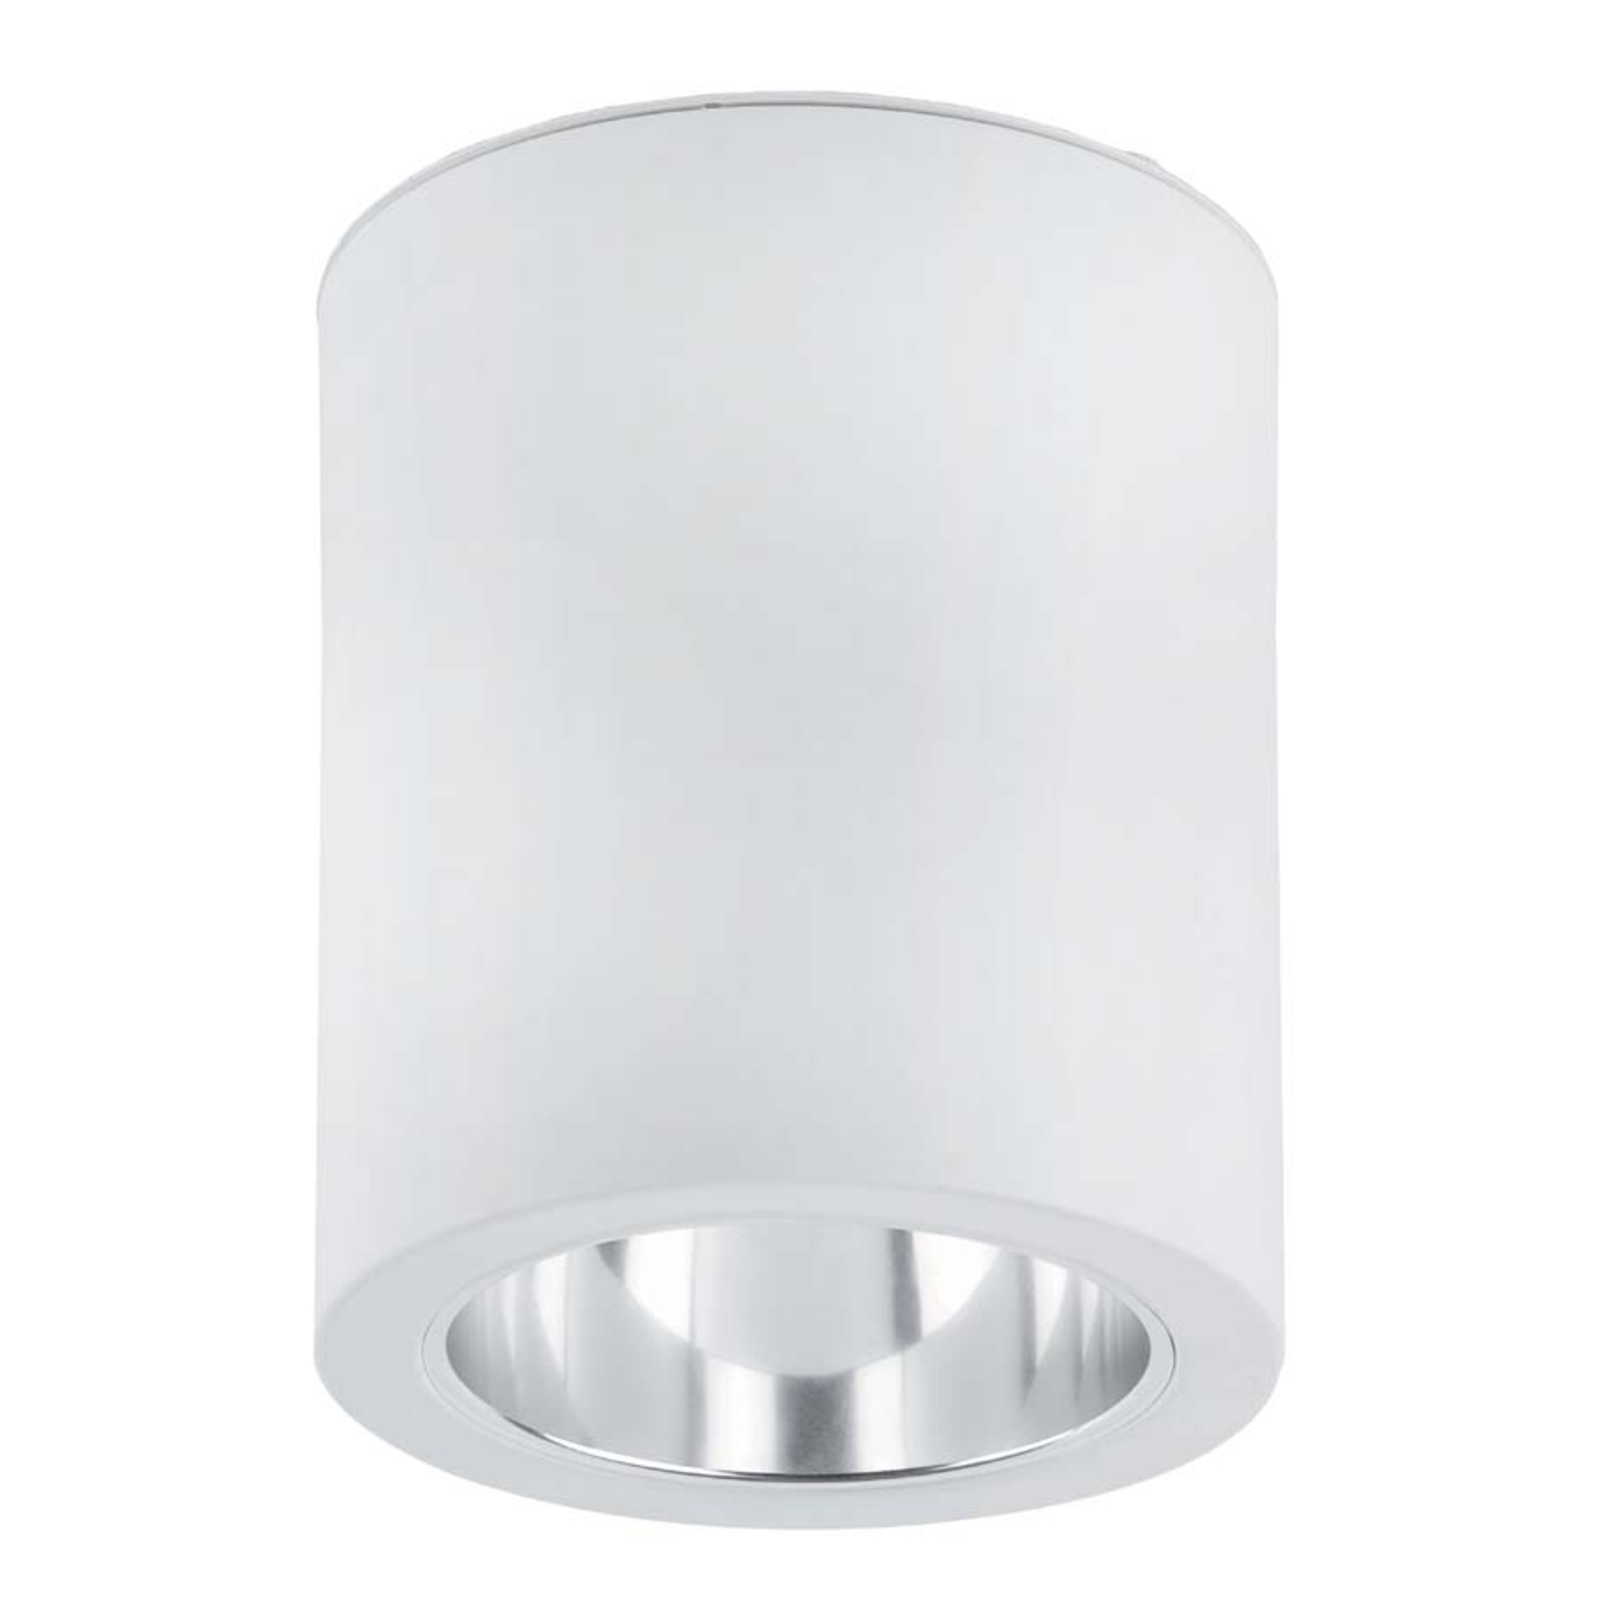 Pote 1 Aesthetic Ceiling Lamp - Aluminium, White